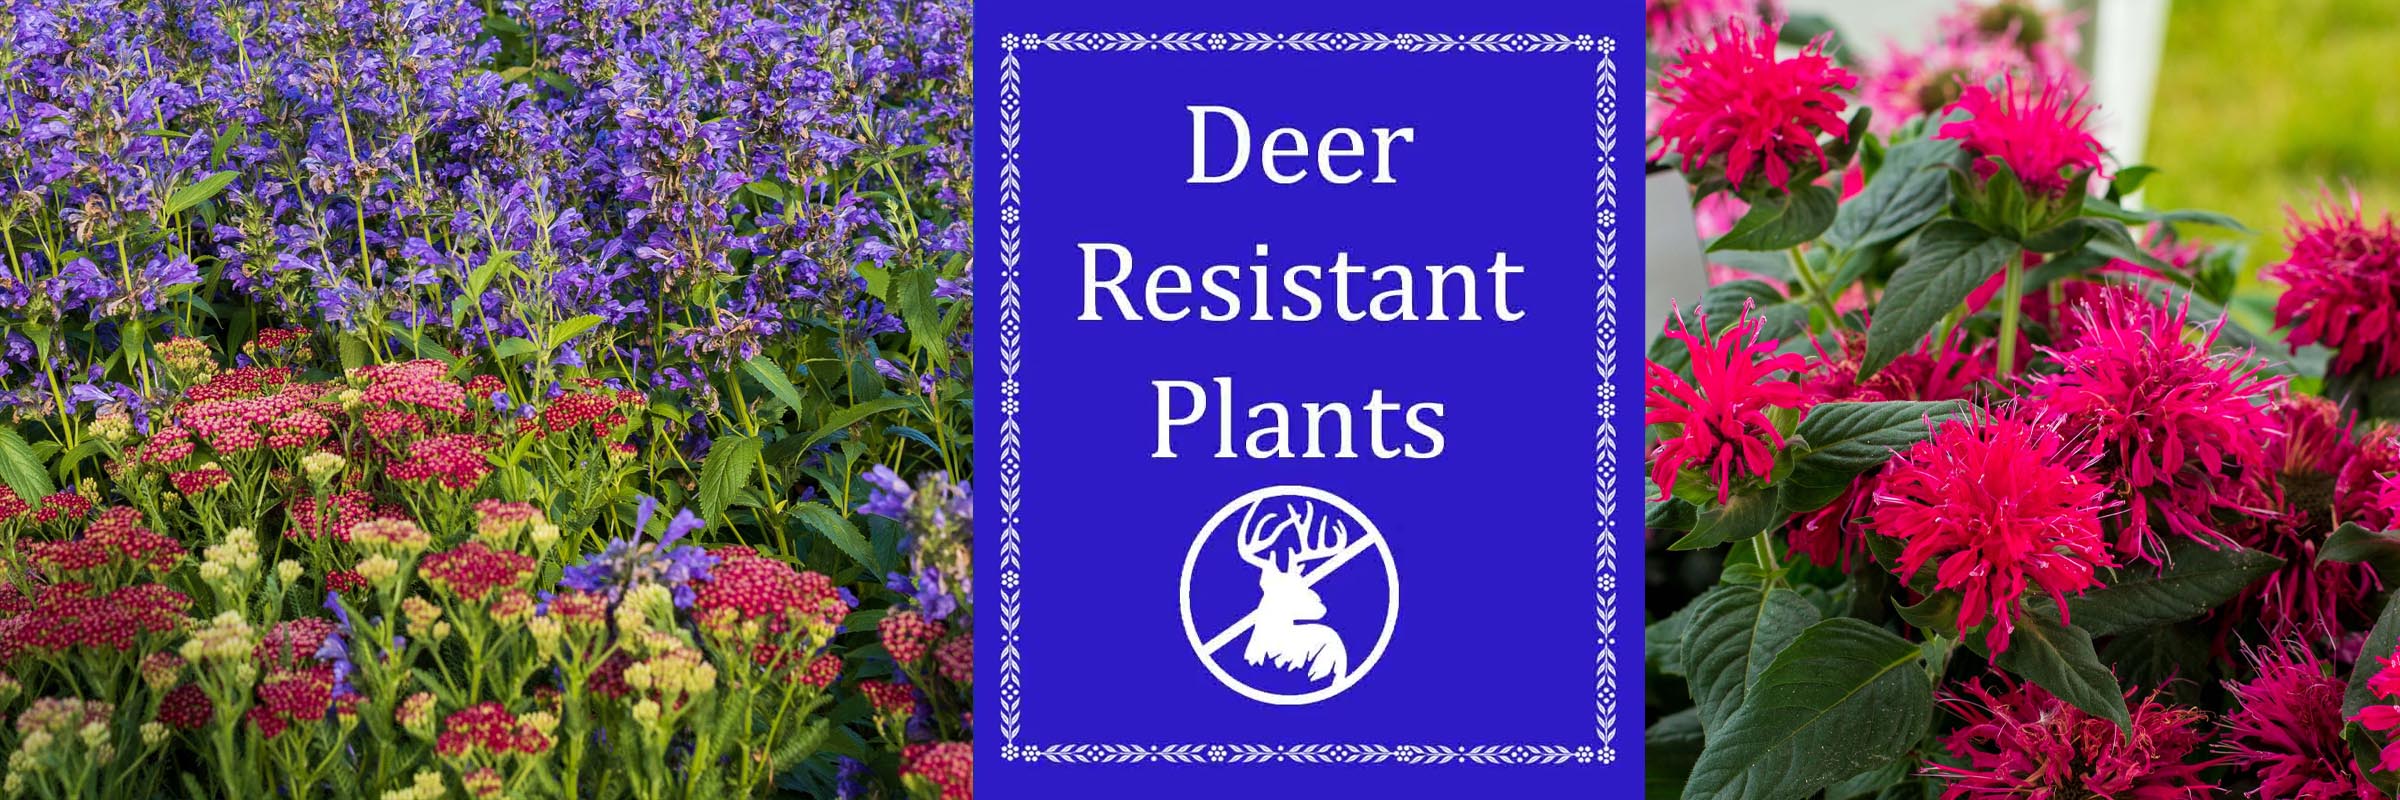 Deer resistant plants for St Louis Missouri